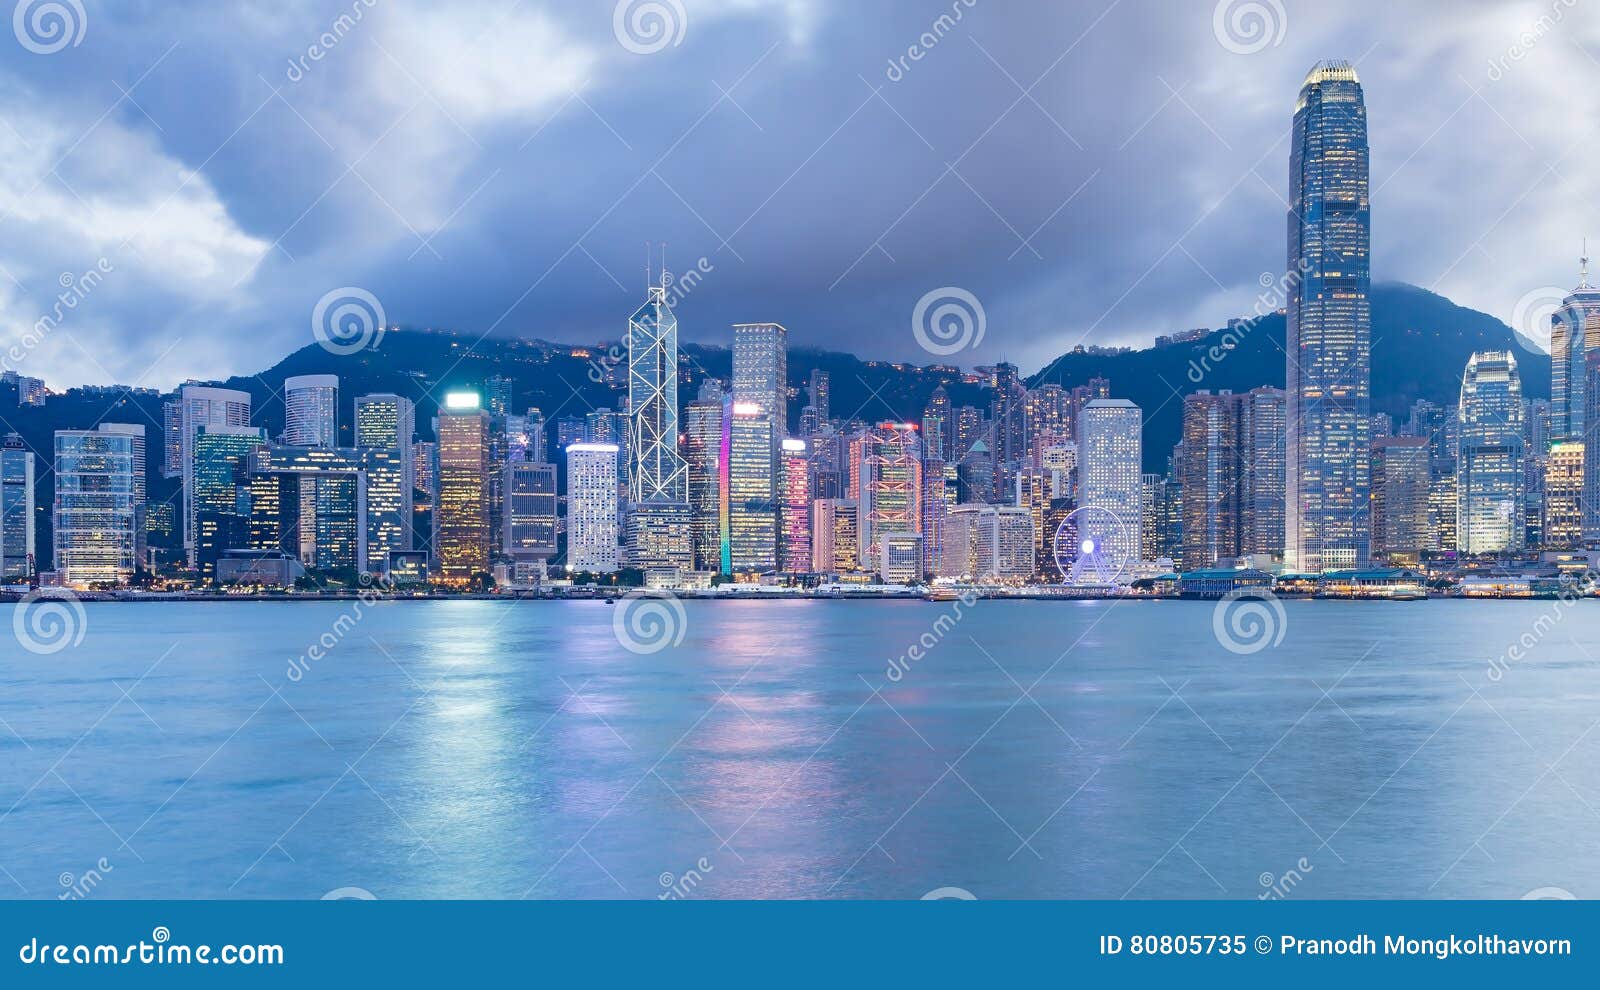 Hong Kong-stads De Bedrijfsbouw Stock Afbeelding - Image of china ...